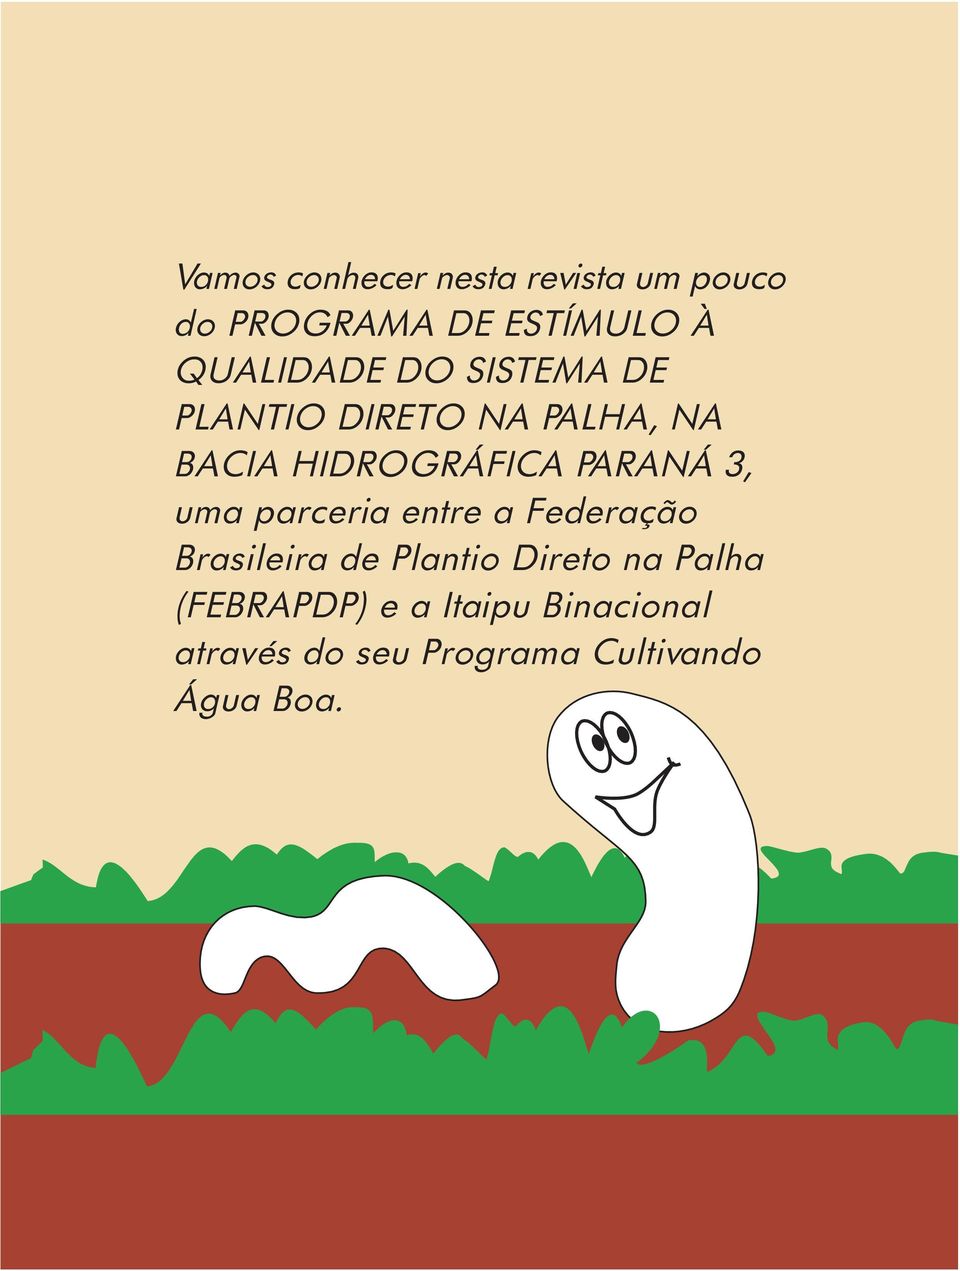 PARANÁ 3, uma parceria entre a Federação Brasileira de Plantio Direto na